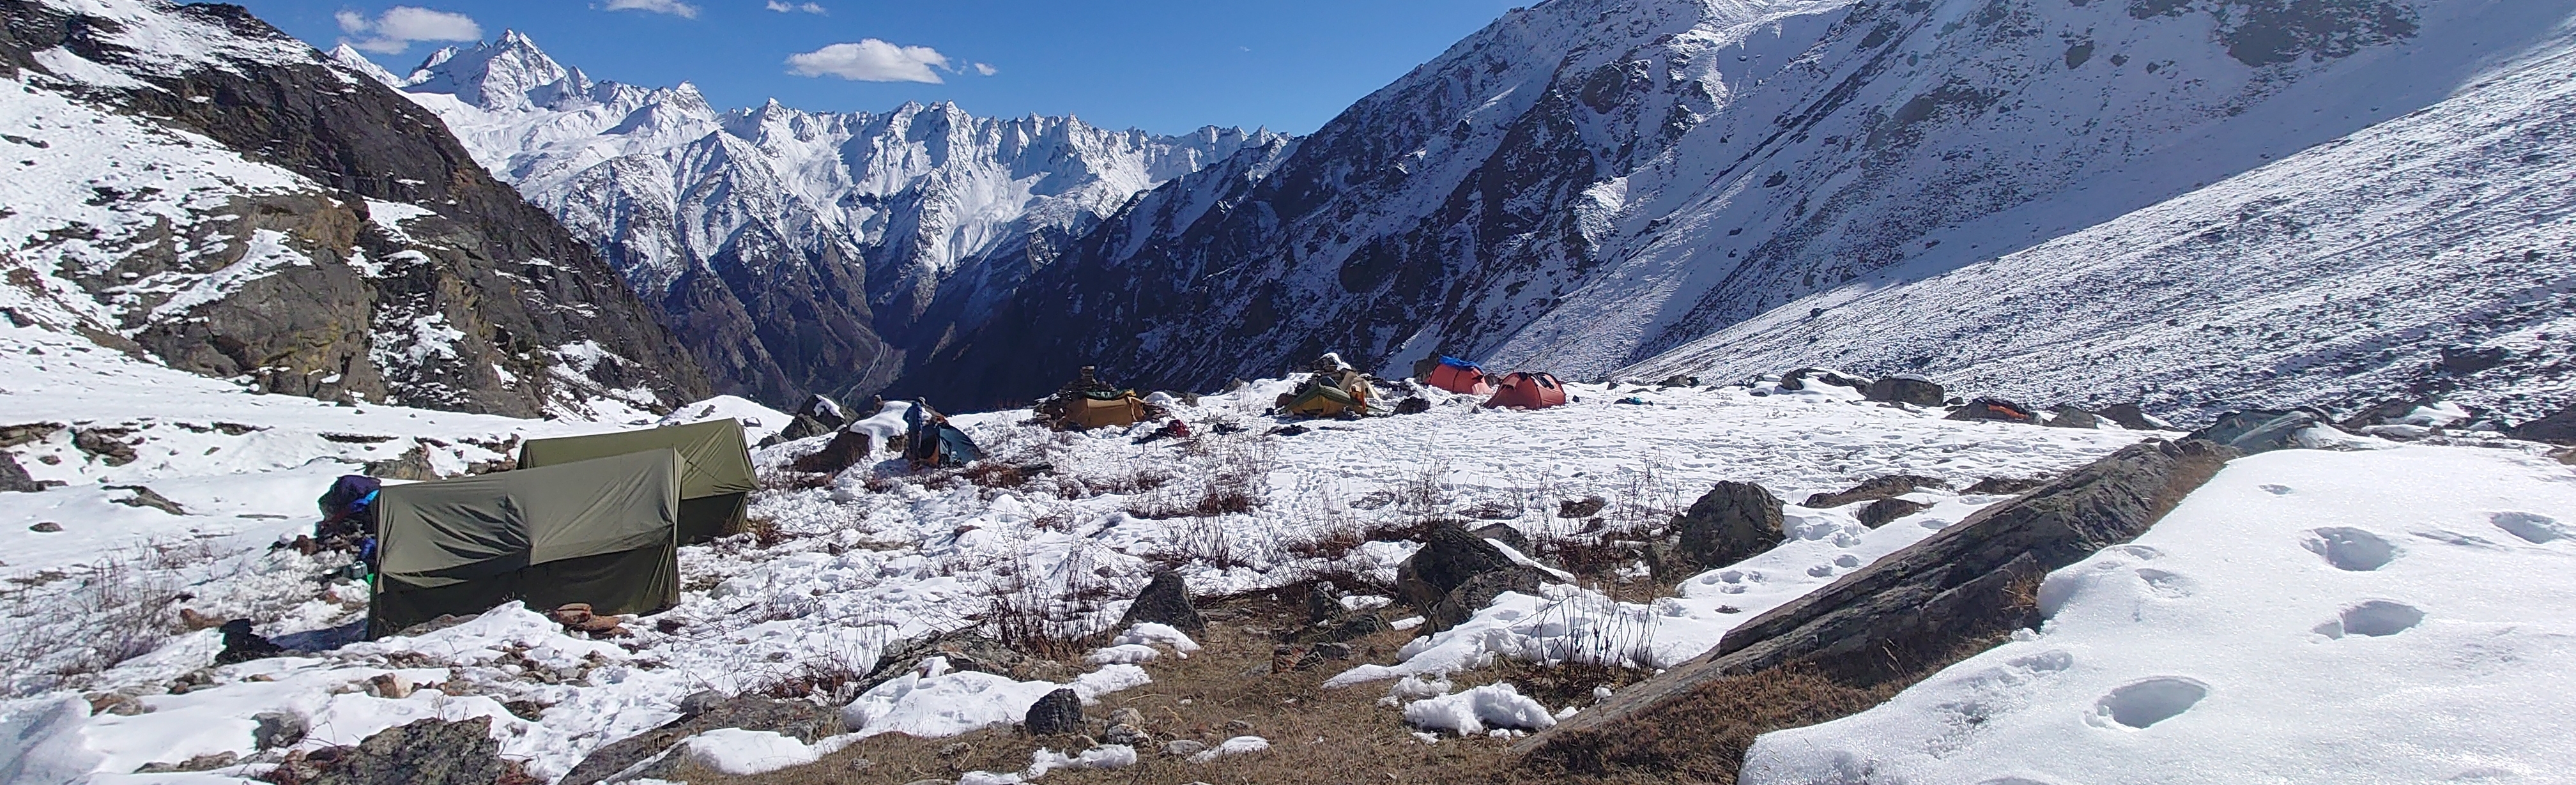 Nepalexpedition.JPG